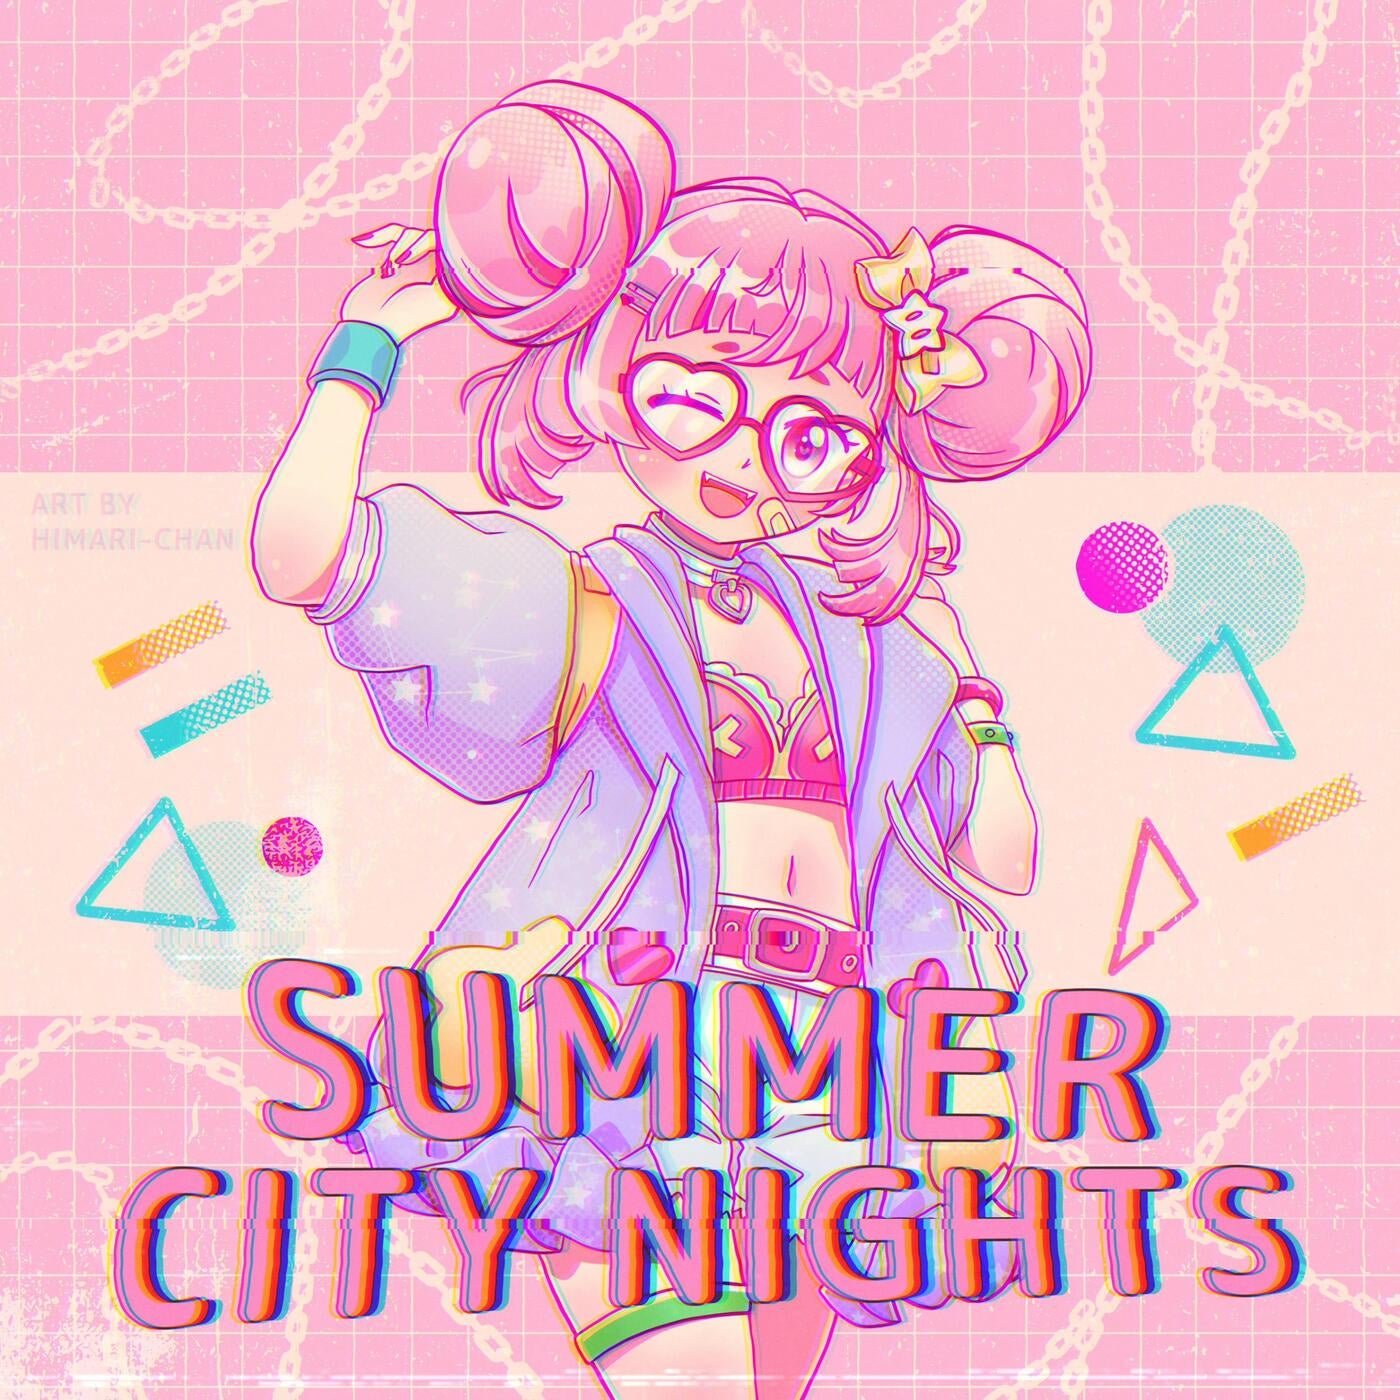 Summer City Nights